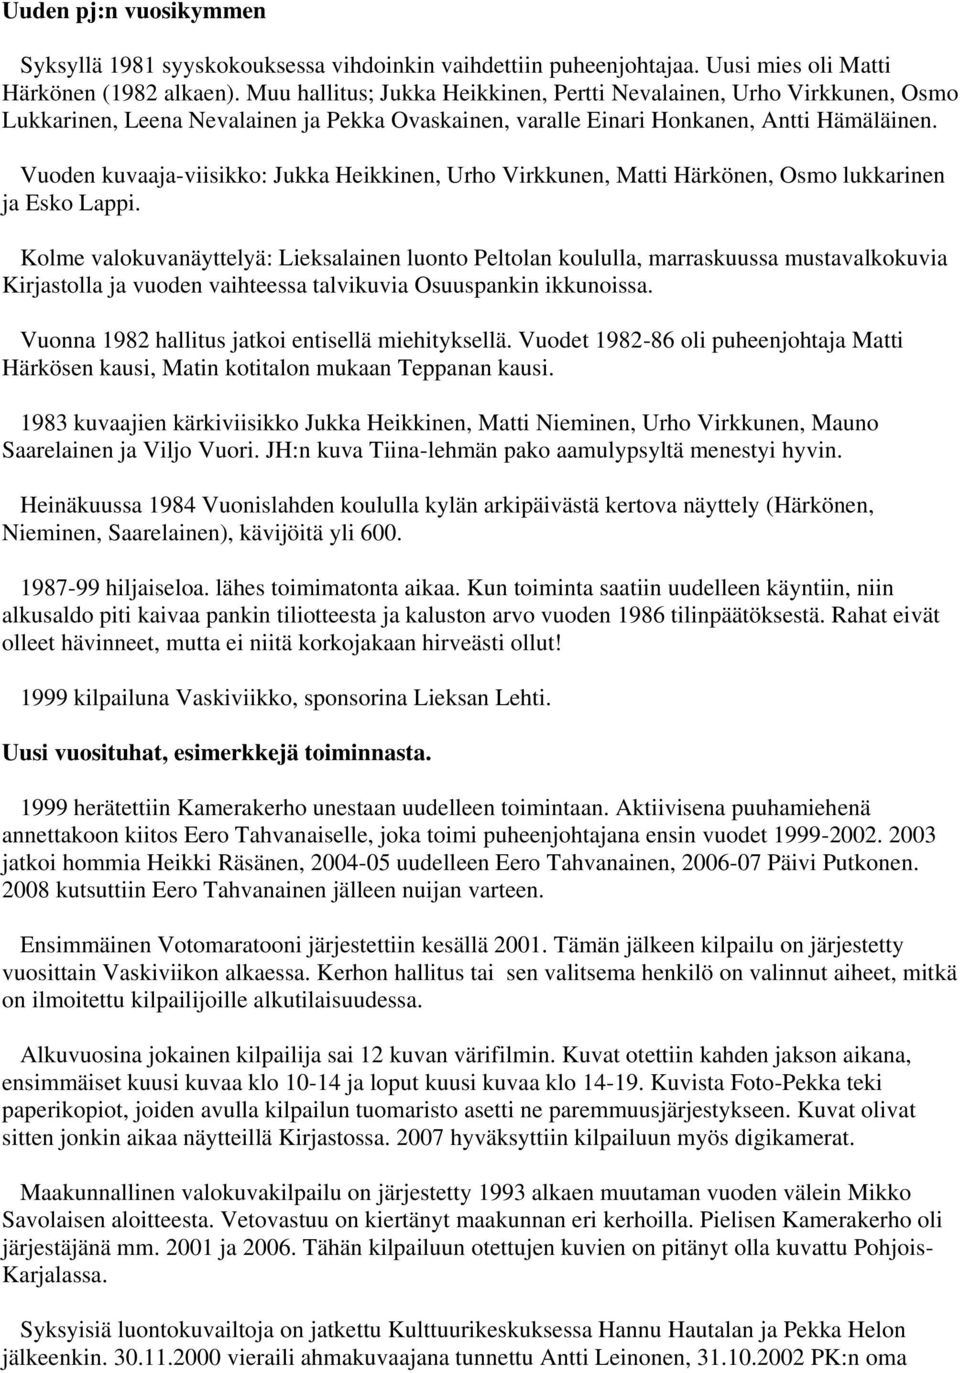 Vuoden kuvaaja-viisikko: Jukka Heikkinen, Urho Virkkunen, Matti Härkönen, Osmo lukkarinen ja Esko Lappi.